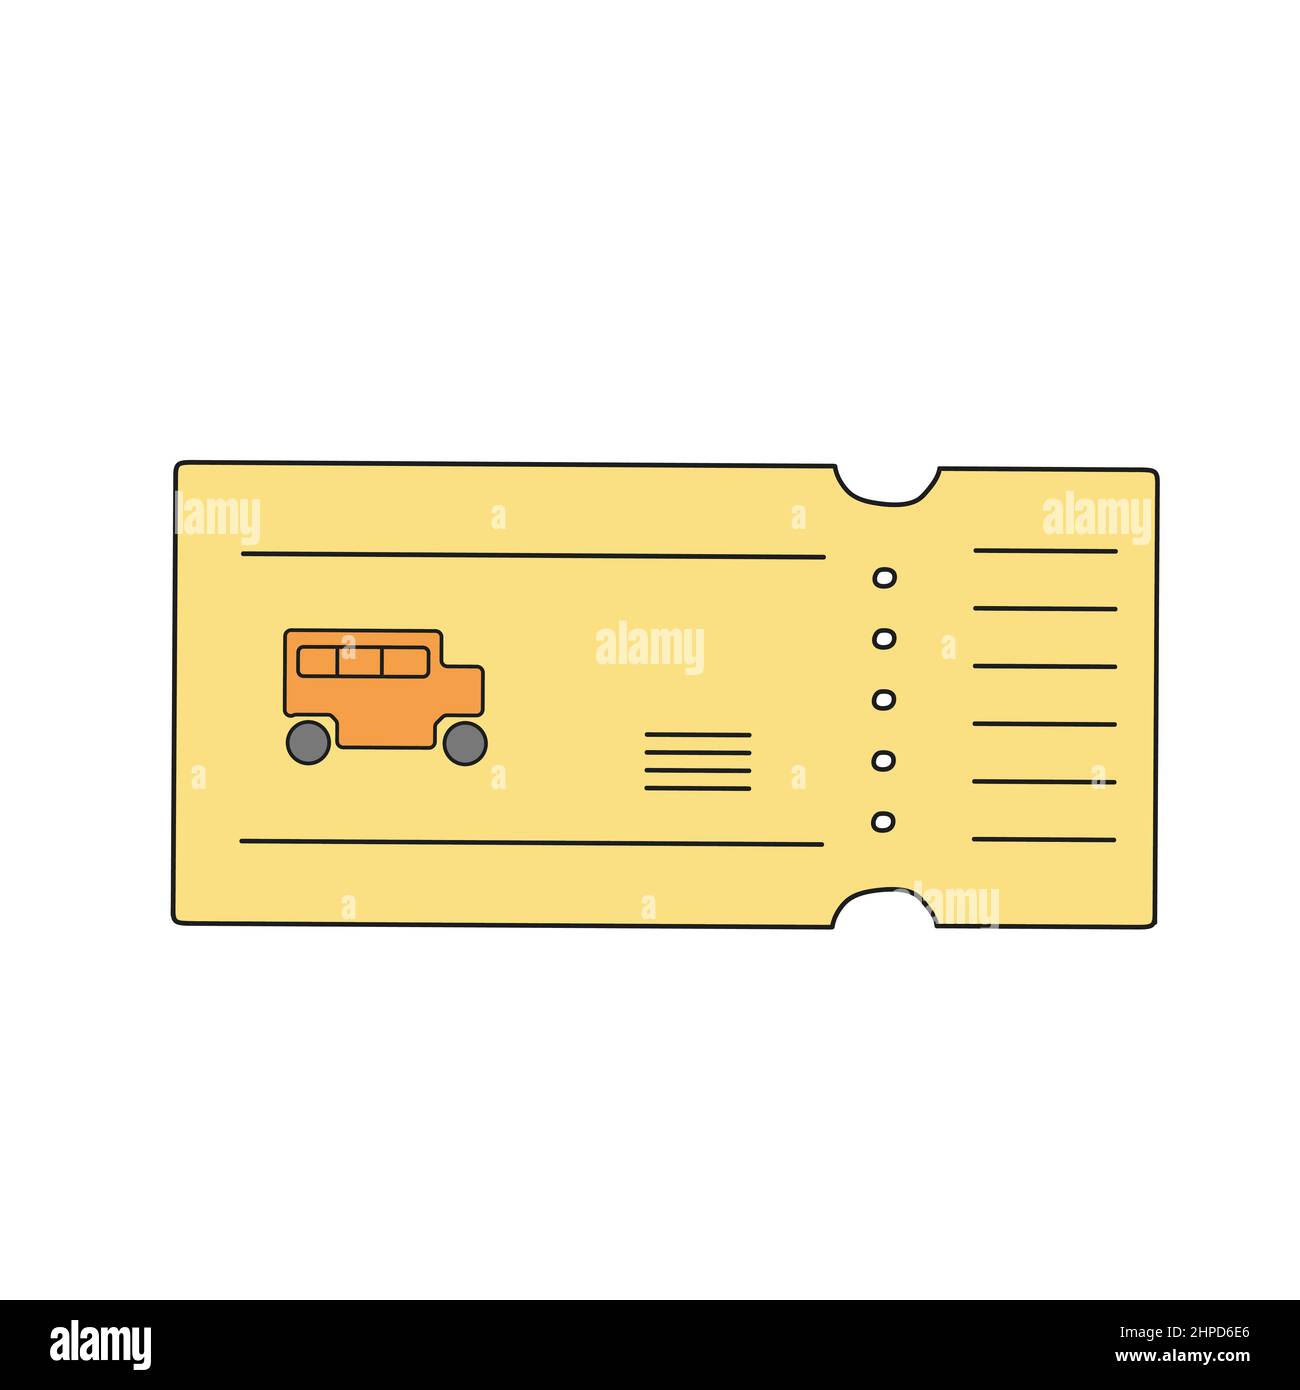 Ticket De Bus Vector En Jaune Style Dessin Animé Plat Icône De Vecteur Sur Fond Blanc Image 